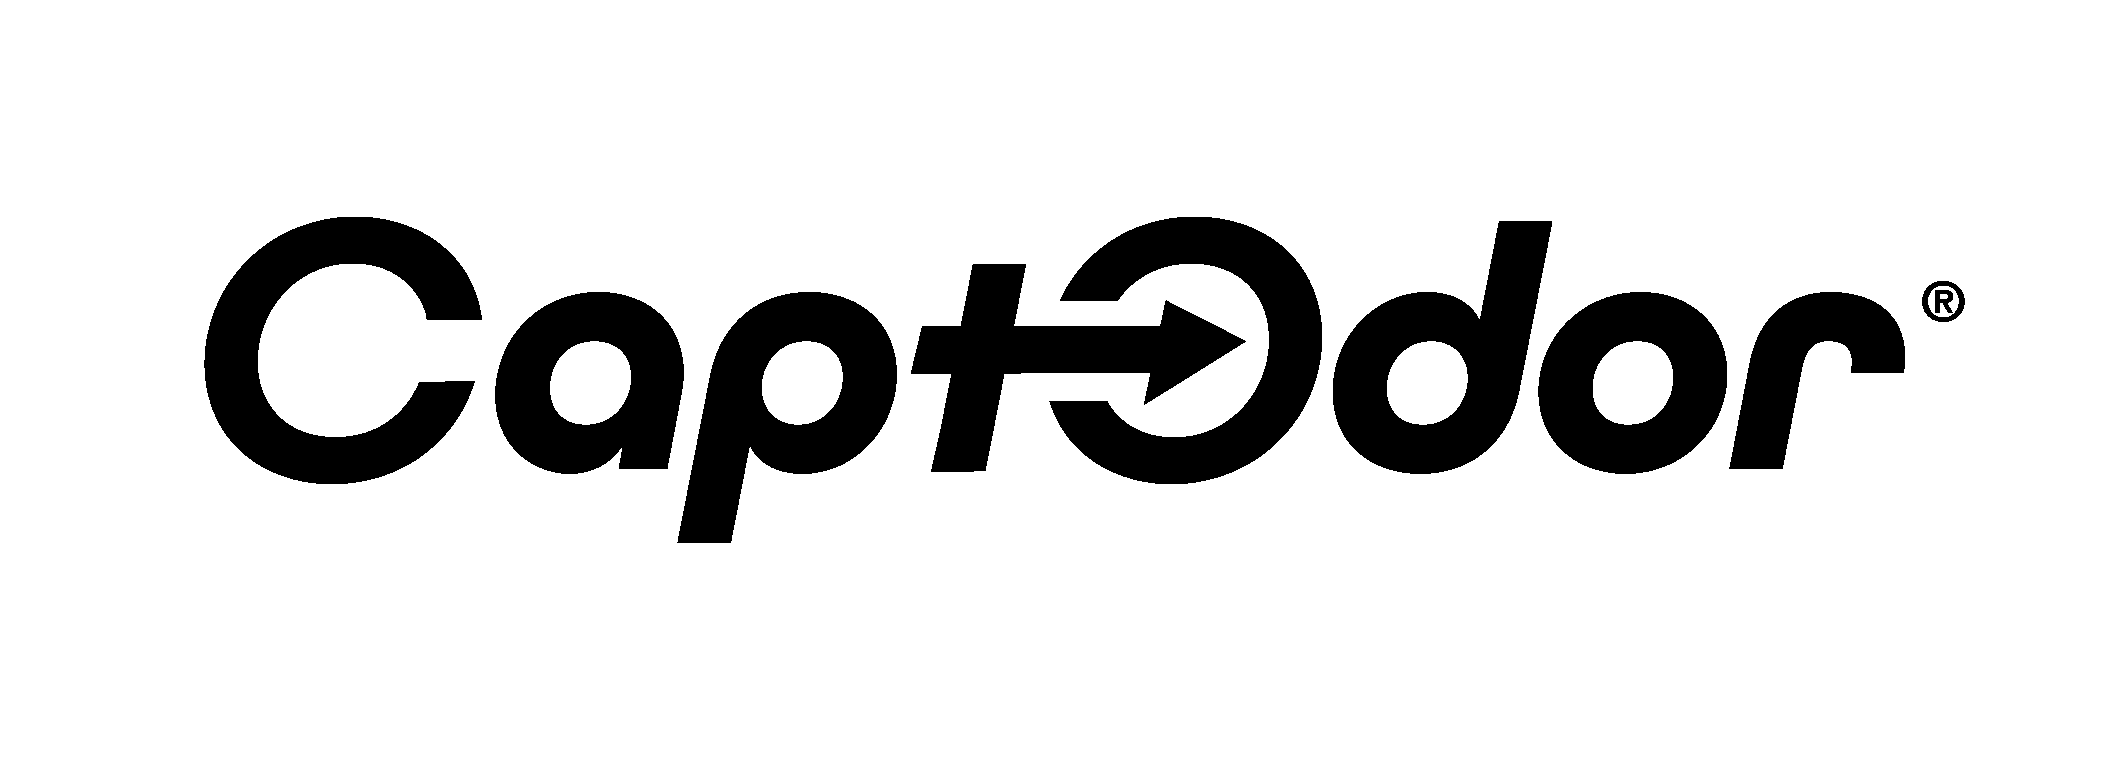 Logo Captodor Noir Seul 2118x